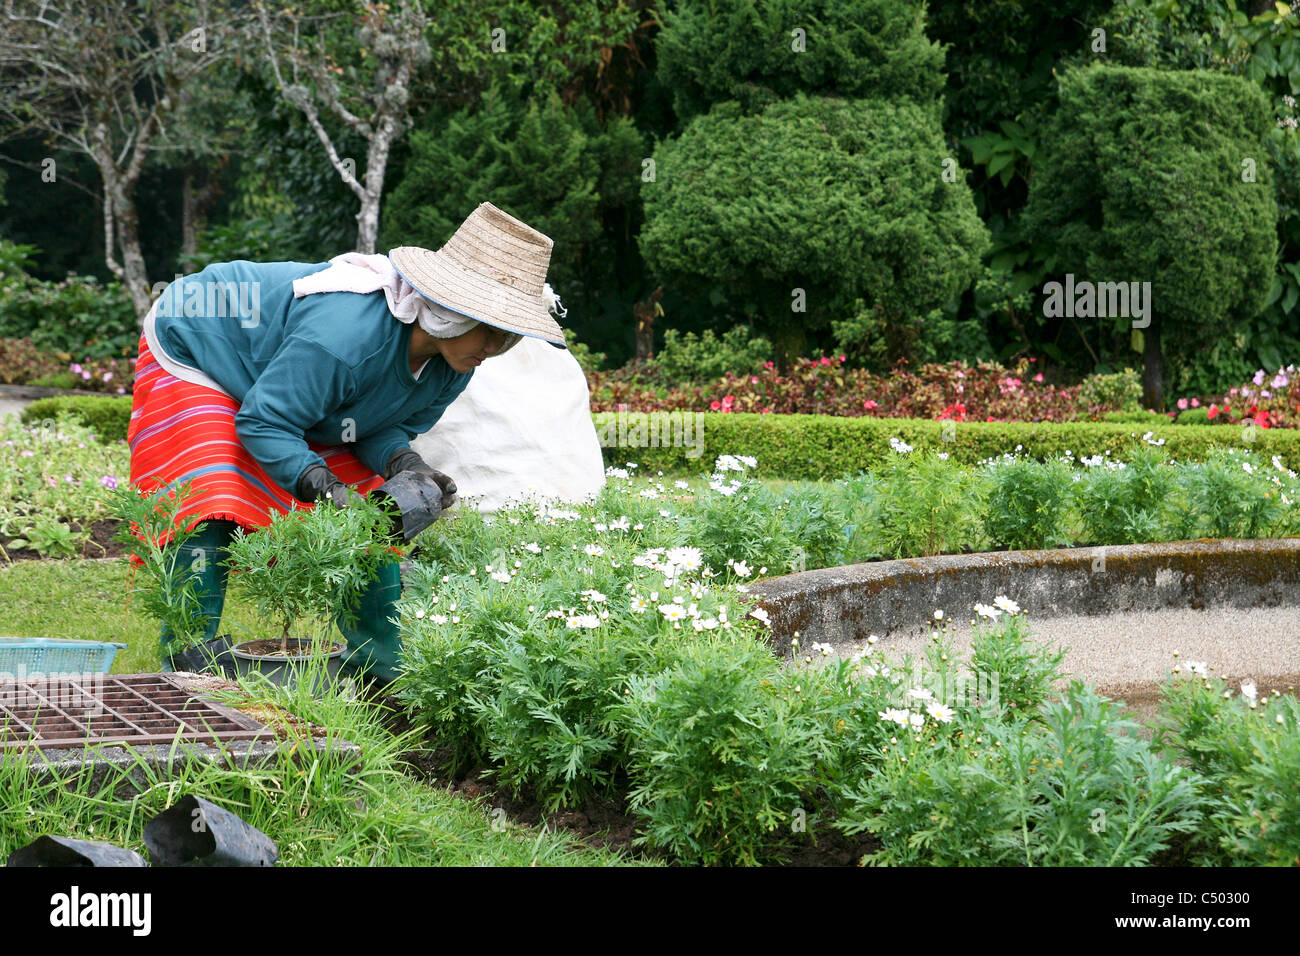 Thailand Thai gardener works in a park Stock Photo